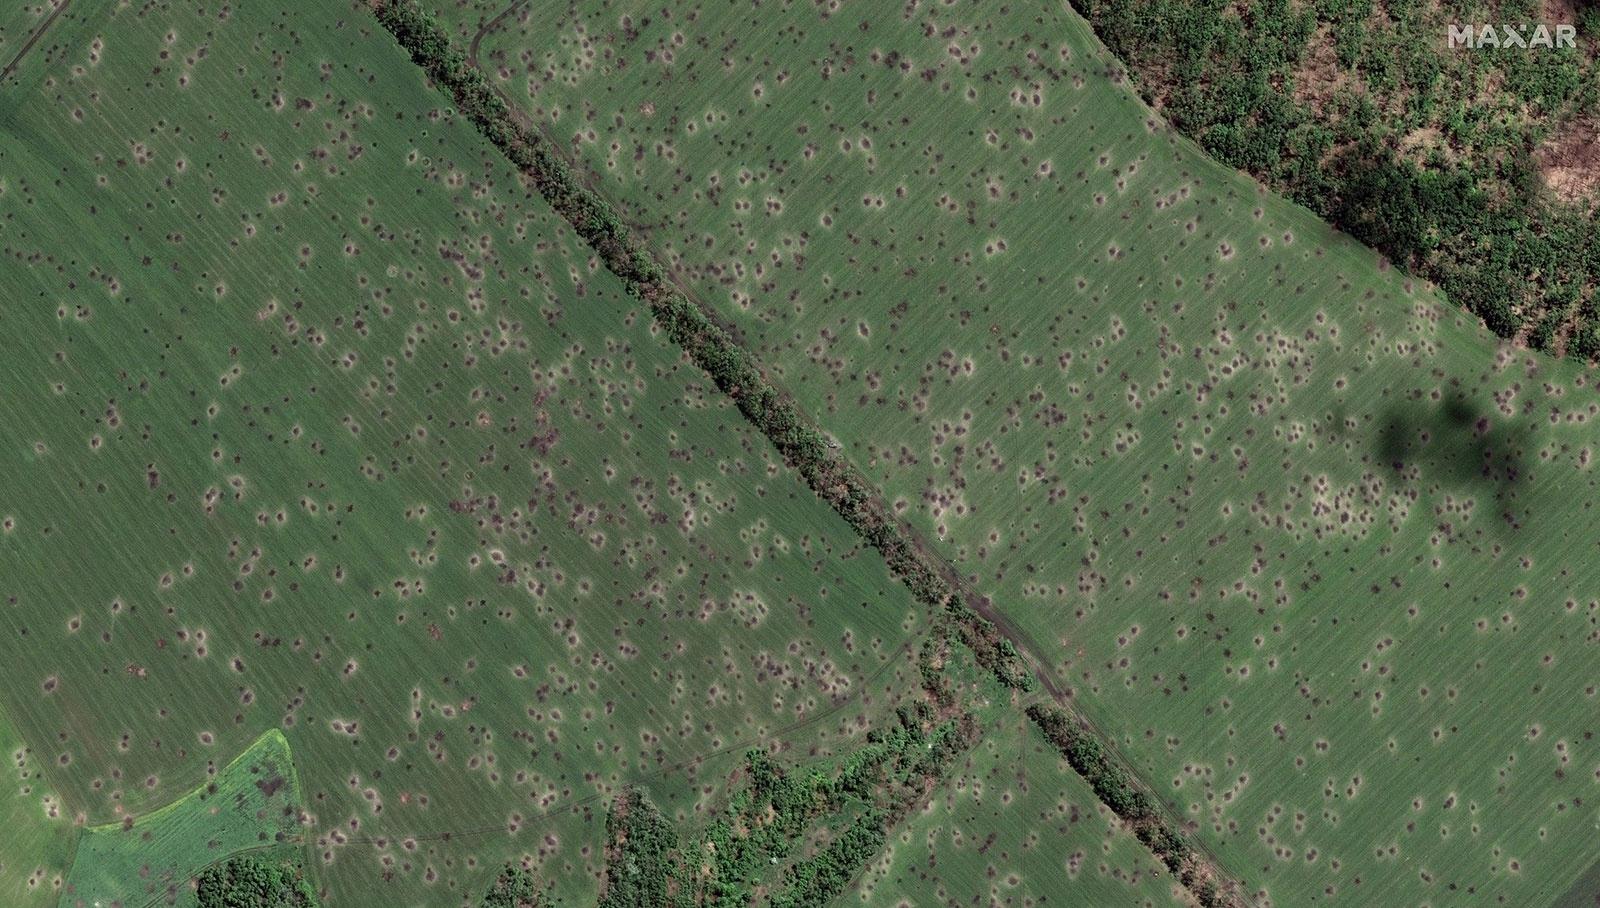 Các đốm chi chít trên một cánh đồng bên ngoài làng Dovhenke là dấu tích của các cuộc pháo kích. Ảnh: Maxar Technologies.